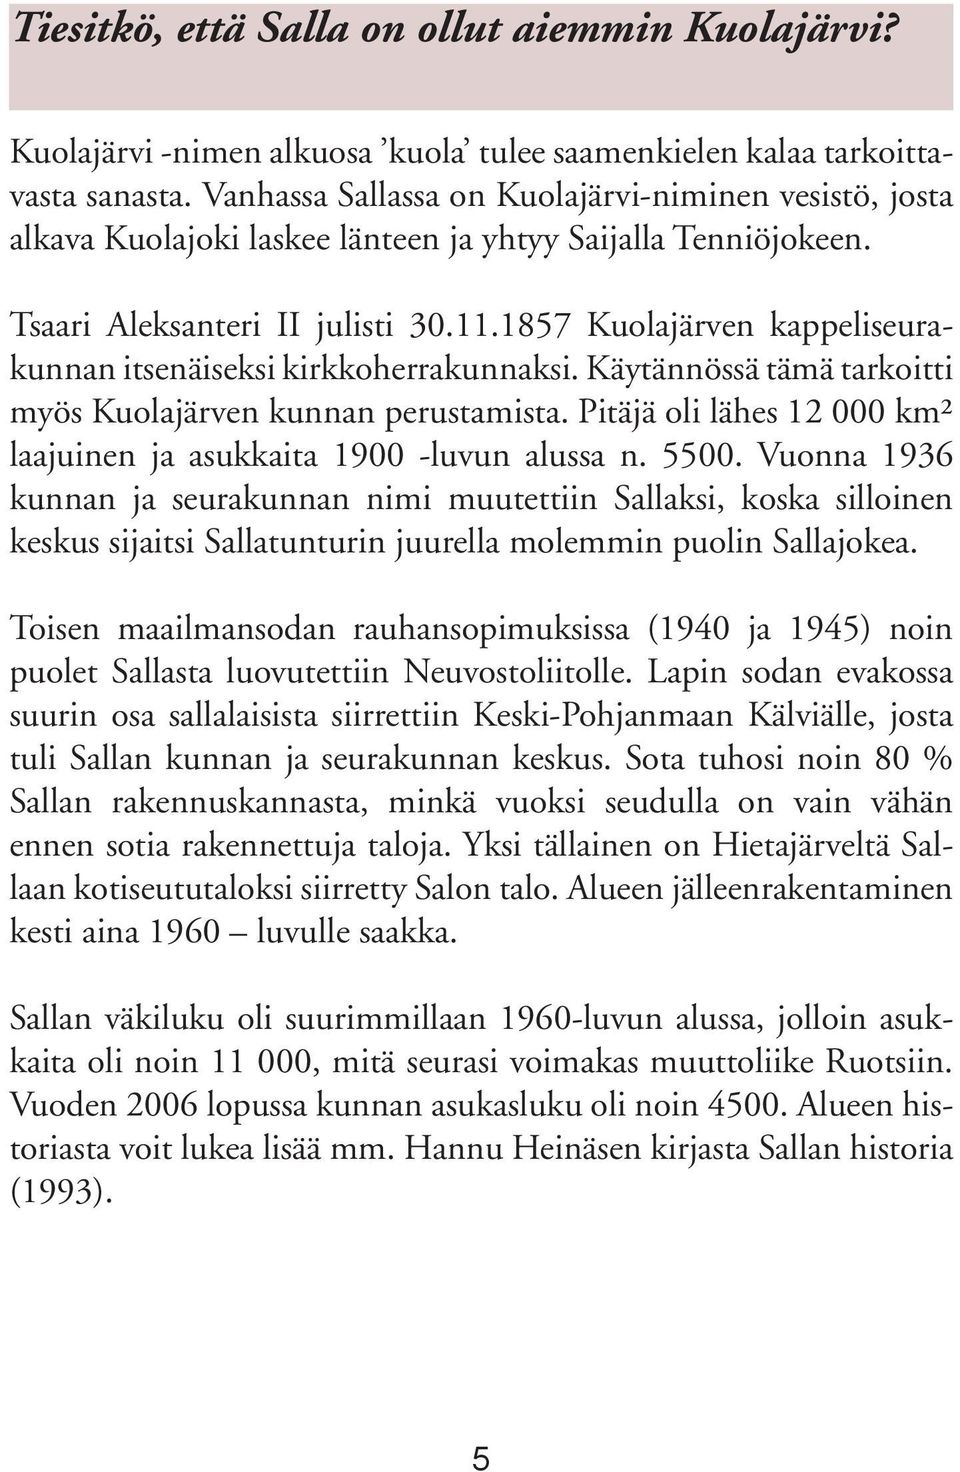 1857 Kuolajärven kappeliseurakunnan itsenäiseksi kirkkoherrakunnaksi. Käytännössä tämä tarkoitti myös Kuolajärven kunnan perustamista.